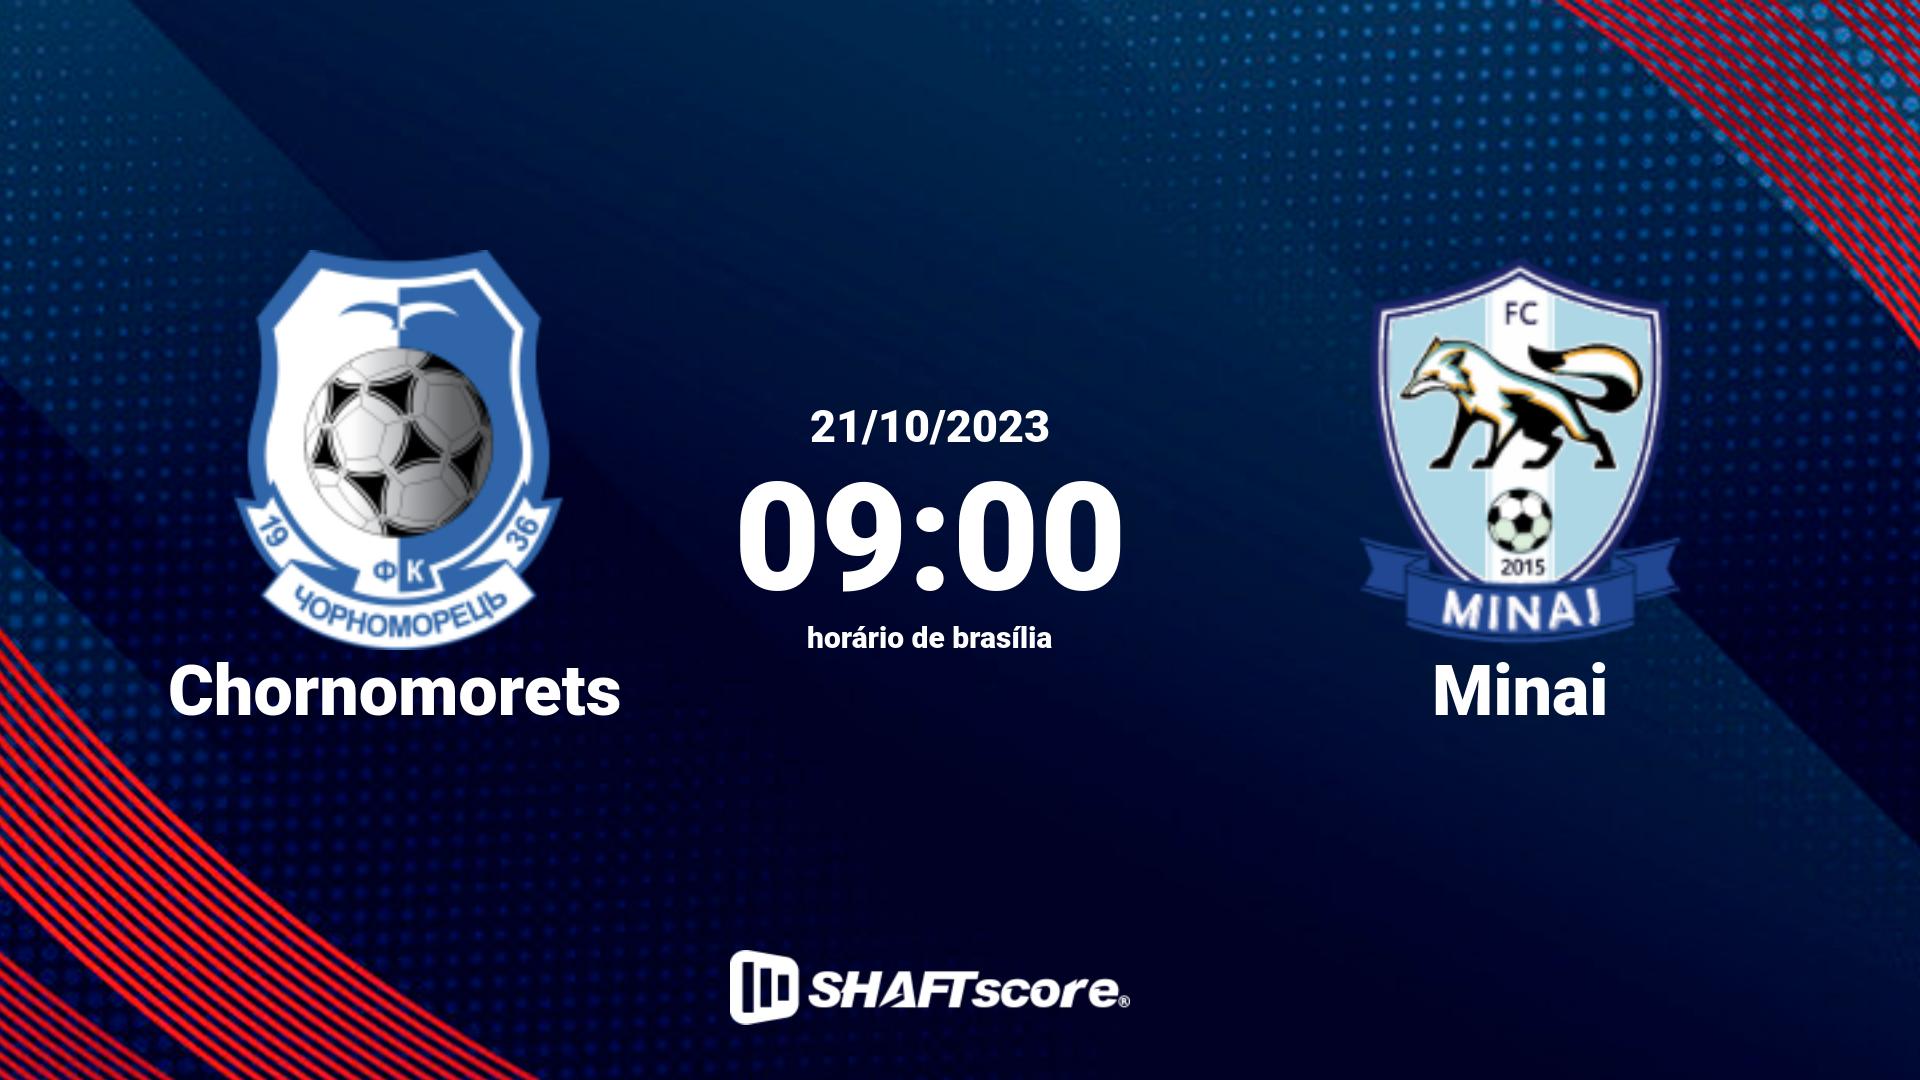 Estatísticas do jogo Chornomorets vs Minai 21.10 09:00